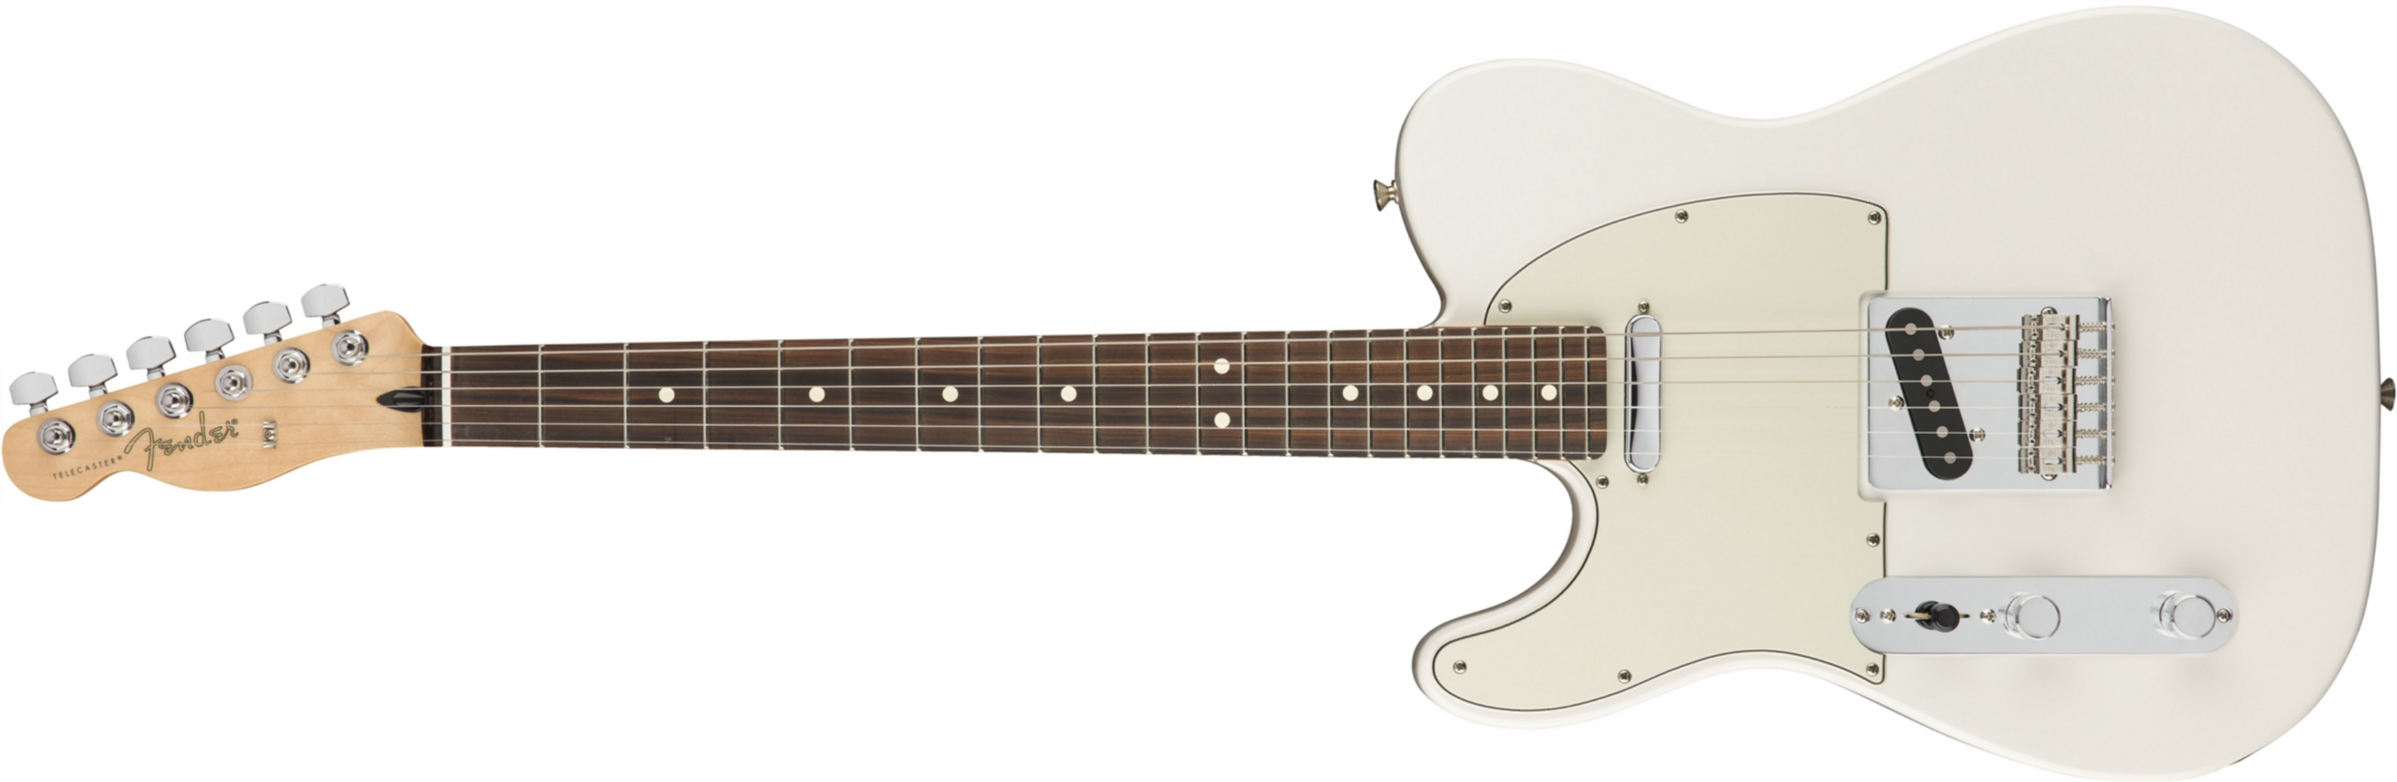 Fender Tele Player Lh Gaucher Mex Ss Pf - Polar White - Linkshandige elektrische gitaar - Main picture